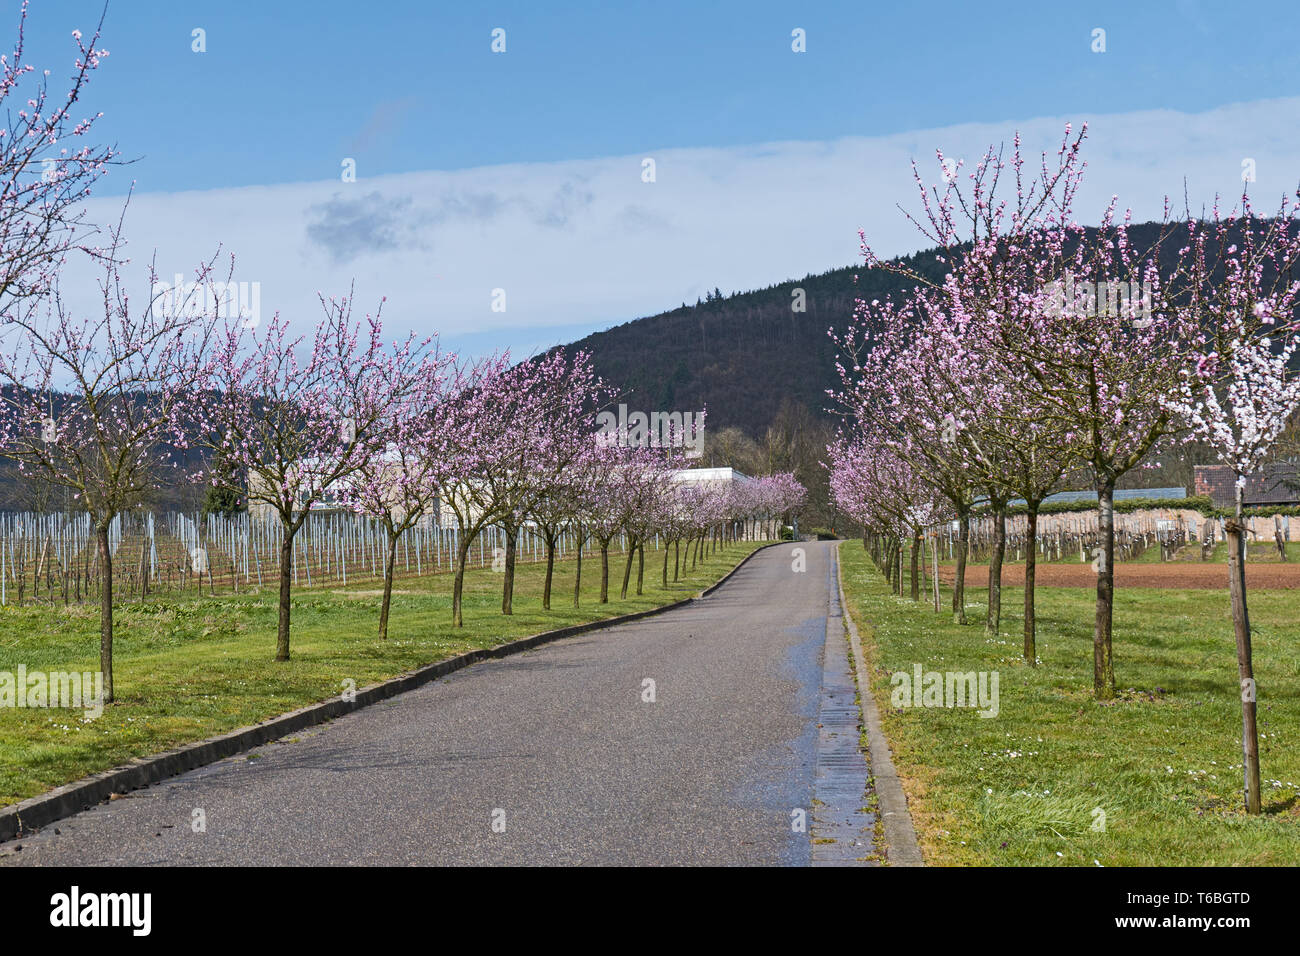 Flowering almond trees (Prunus dulcis) Stock Photo